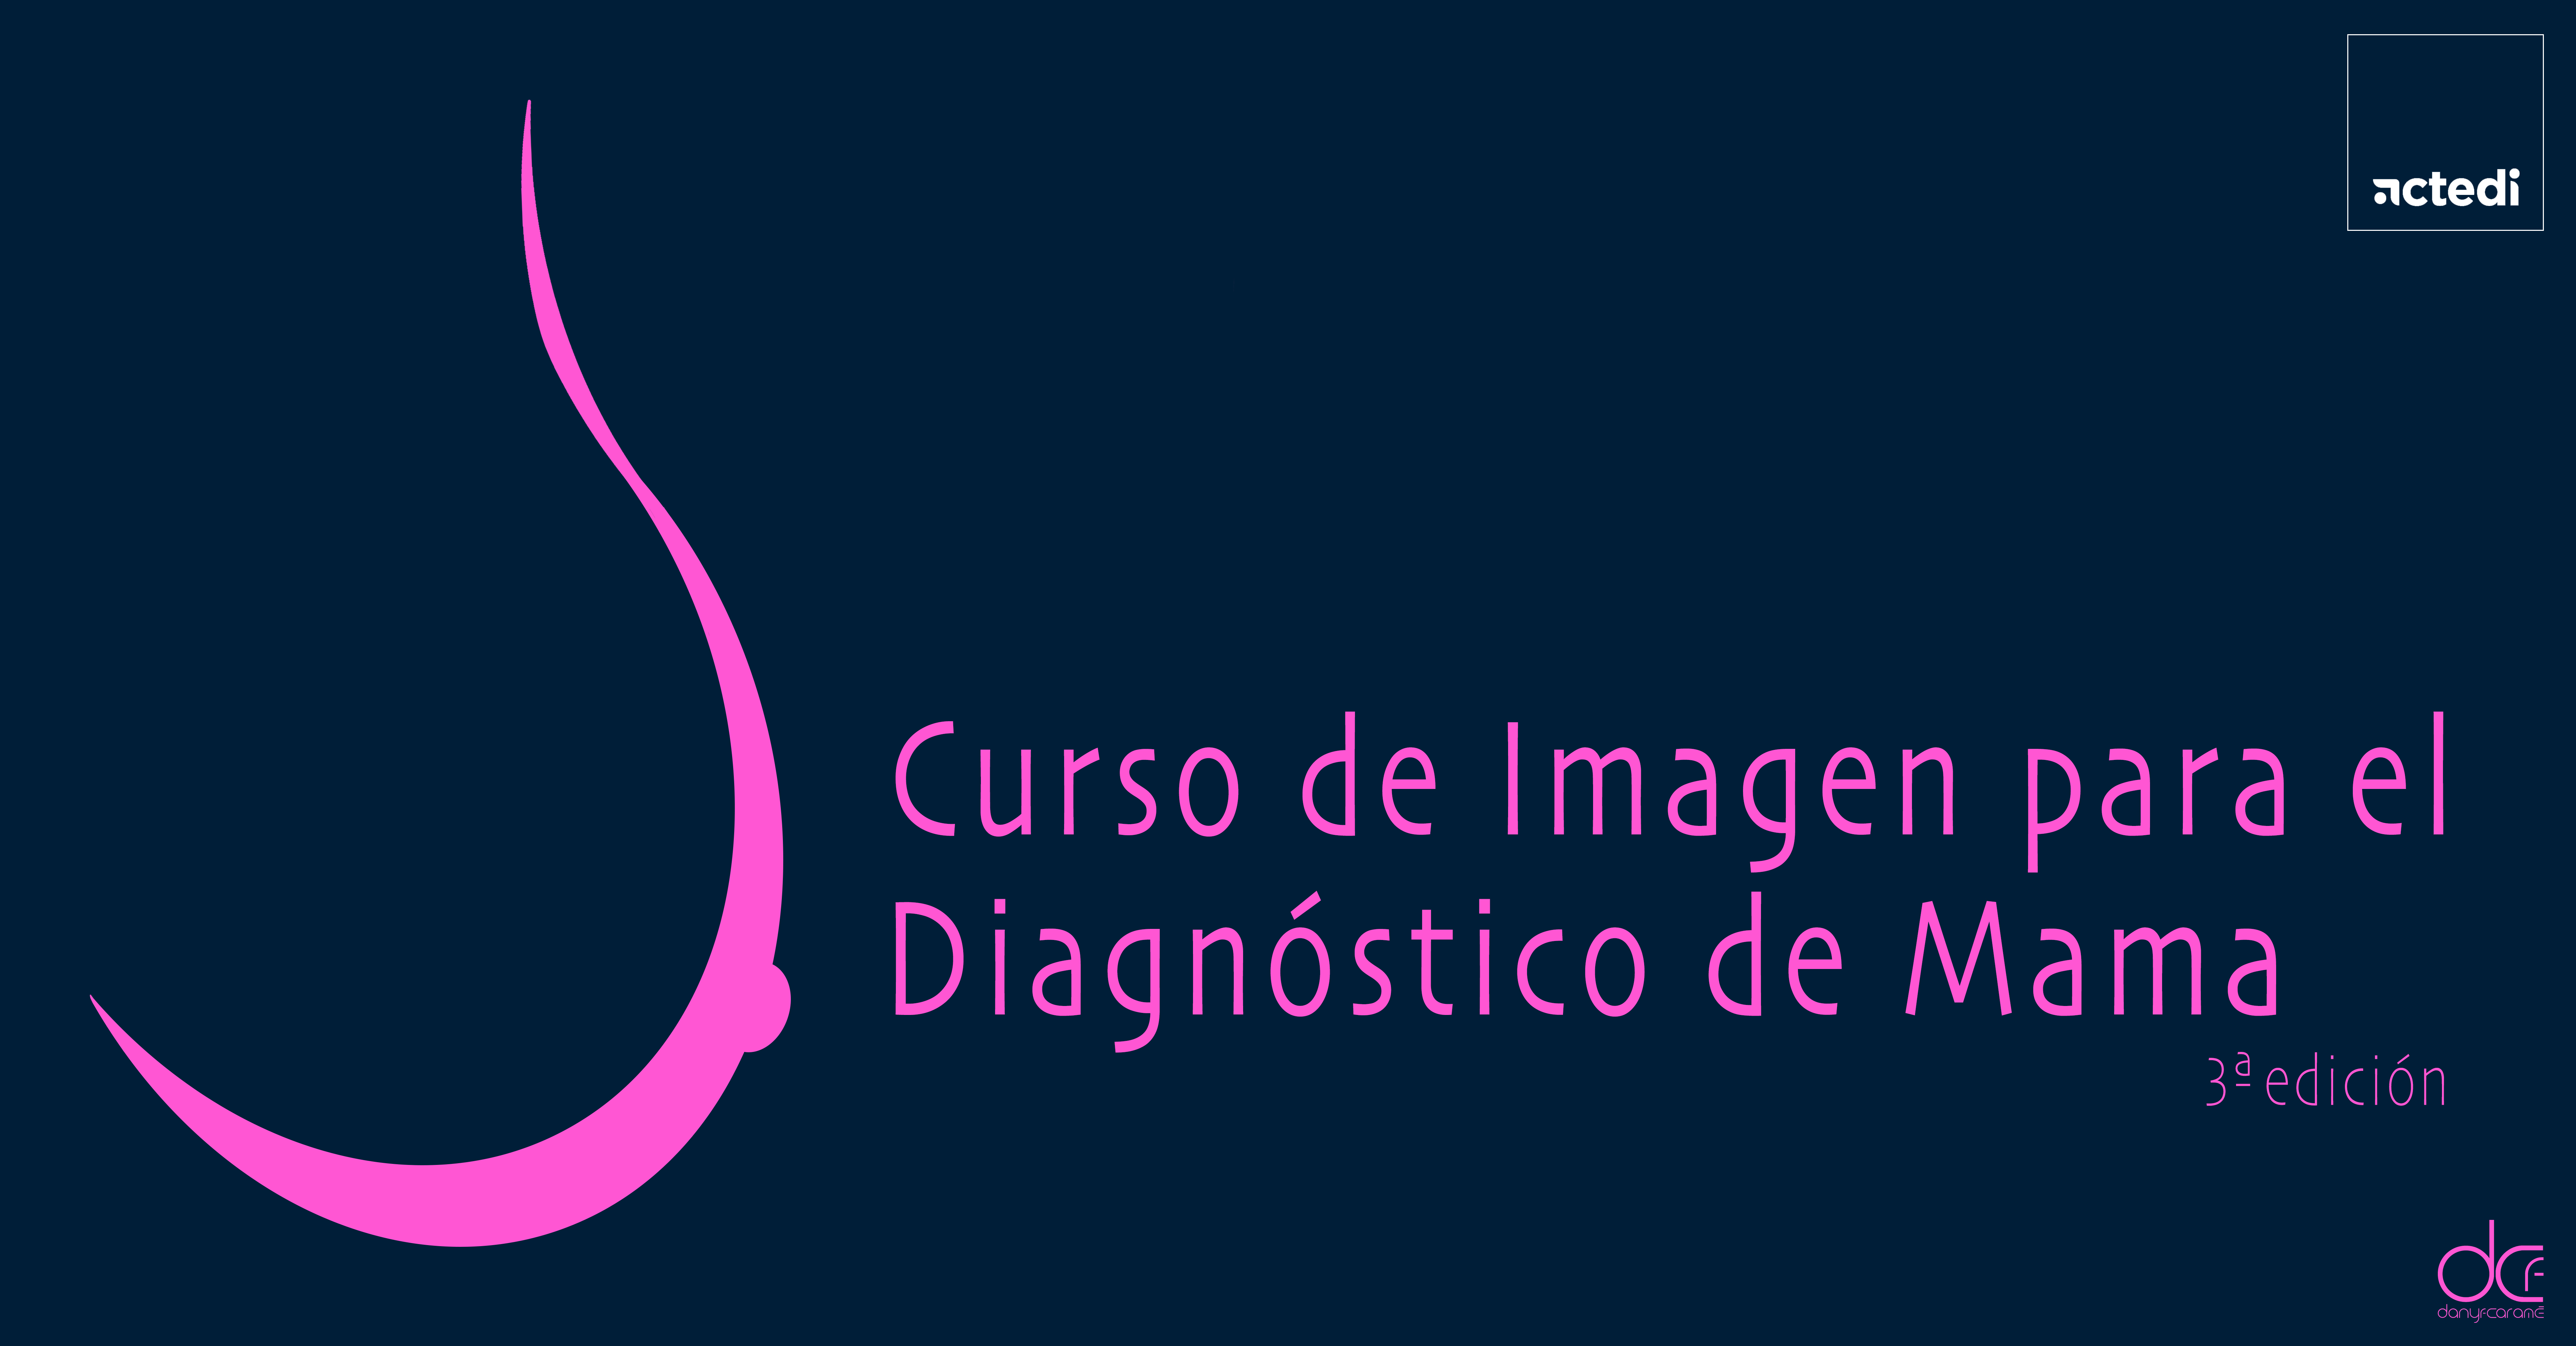 2023 - Curso de Imagen para el Diagnóstico de Mama. 3ª edición. 25 plazas.